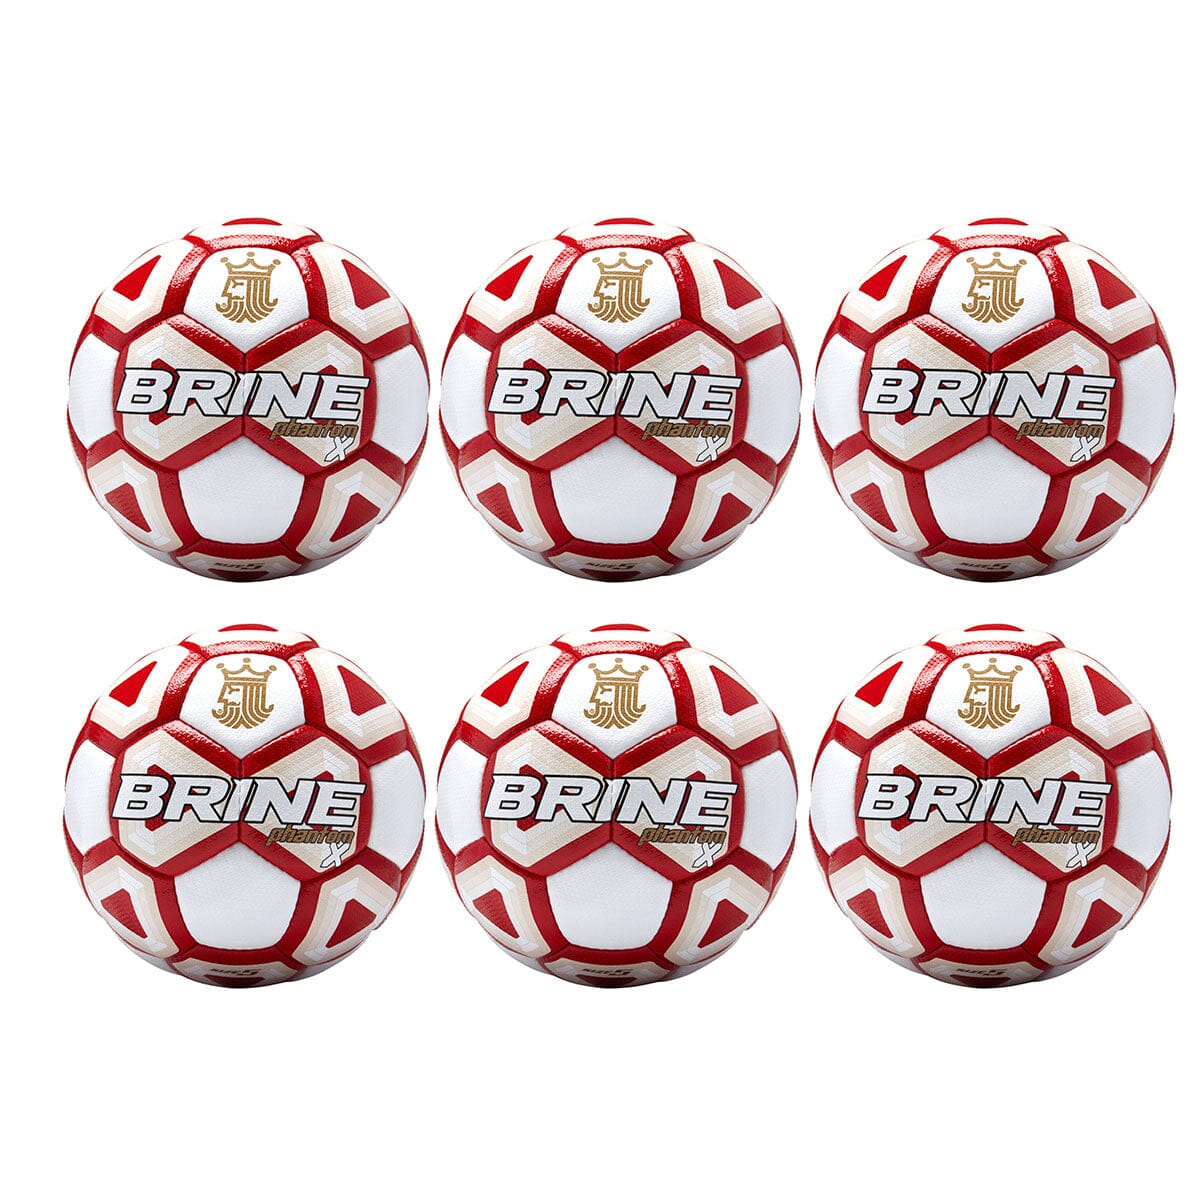 Brine Phantom X Soccer Ball - 6 Packs | SBPHTMX7 Soccer Ball Brine 5 White/Scarlet 